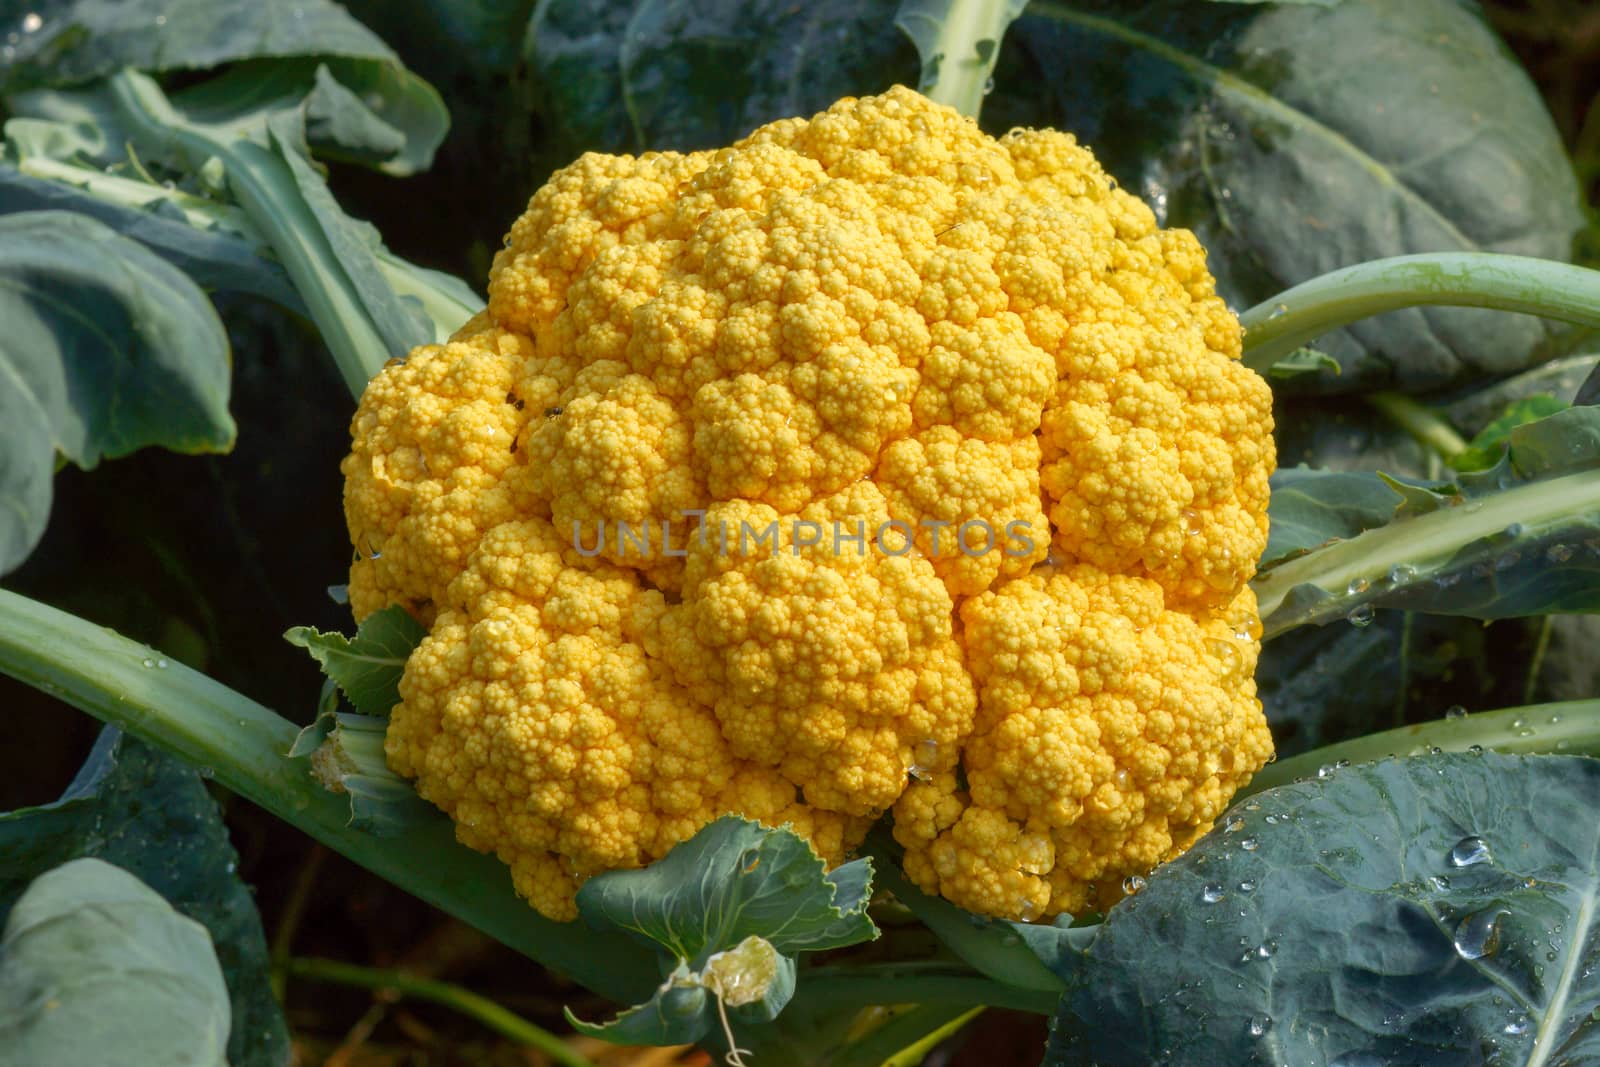 Orange cauliflower by Noppharat_th